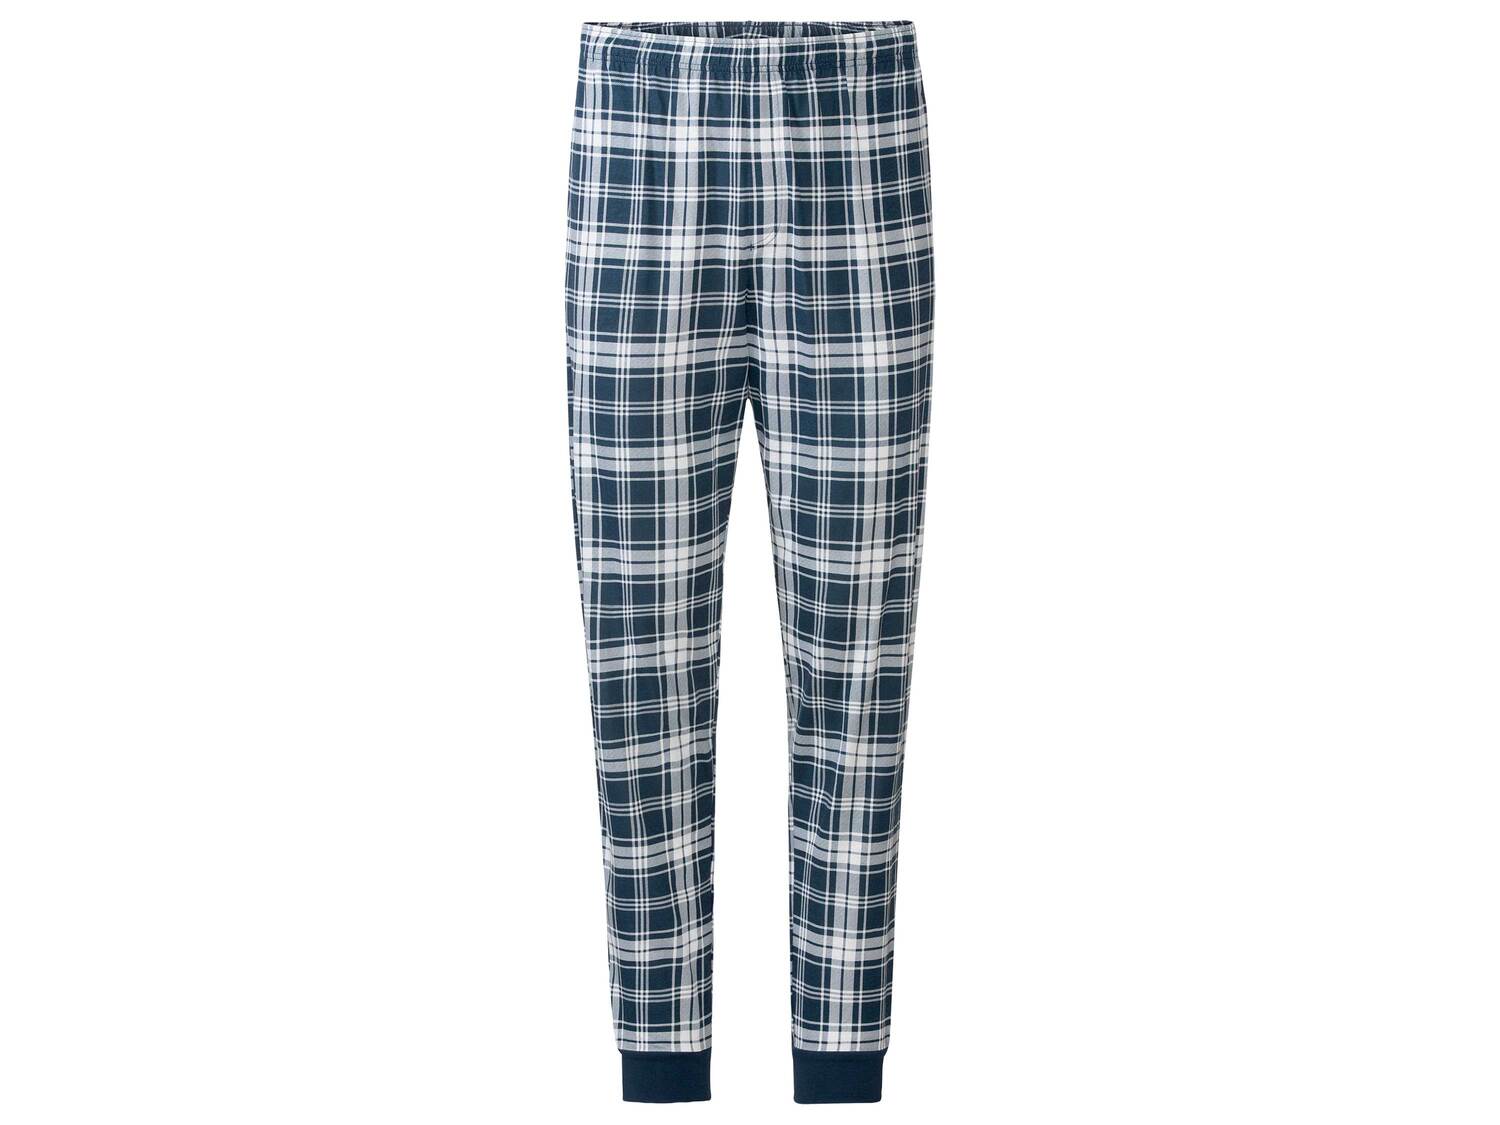 Pyjama homme , le prix 12.99 &#8364; 
- Du S au XL selon mod&egrave;le
- ...